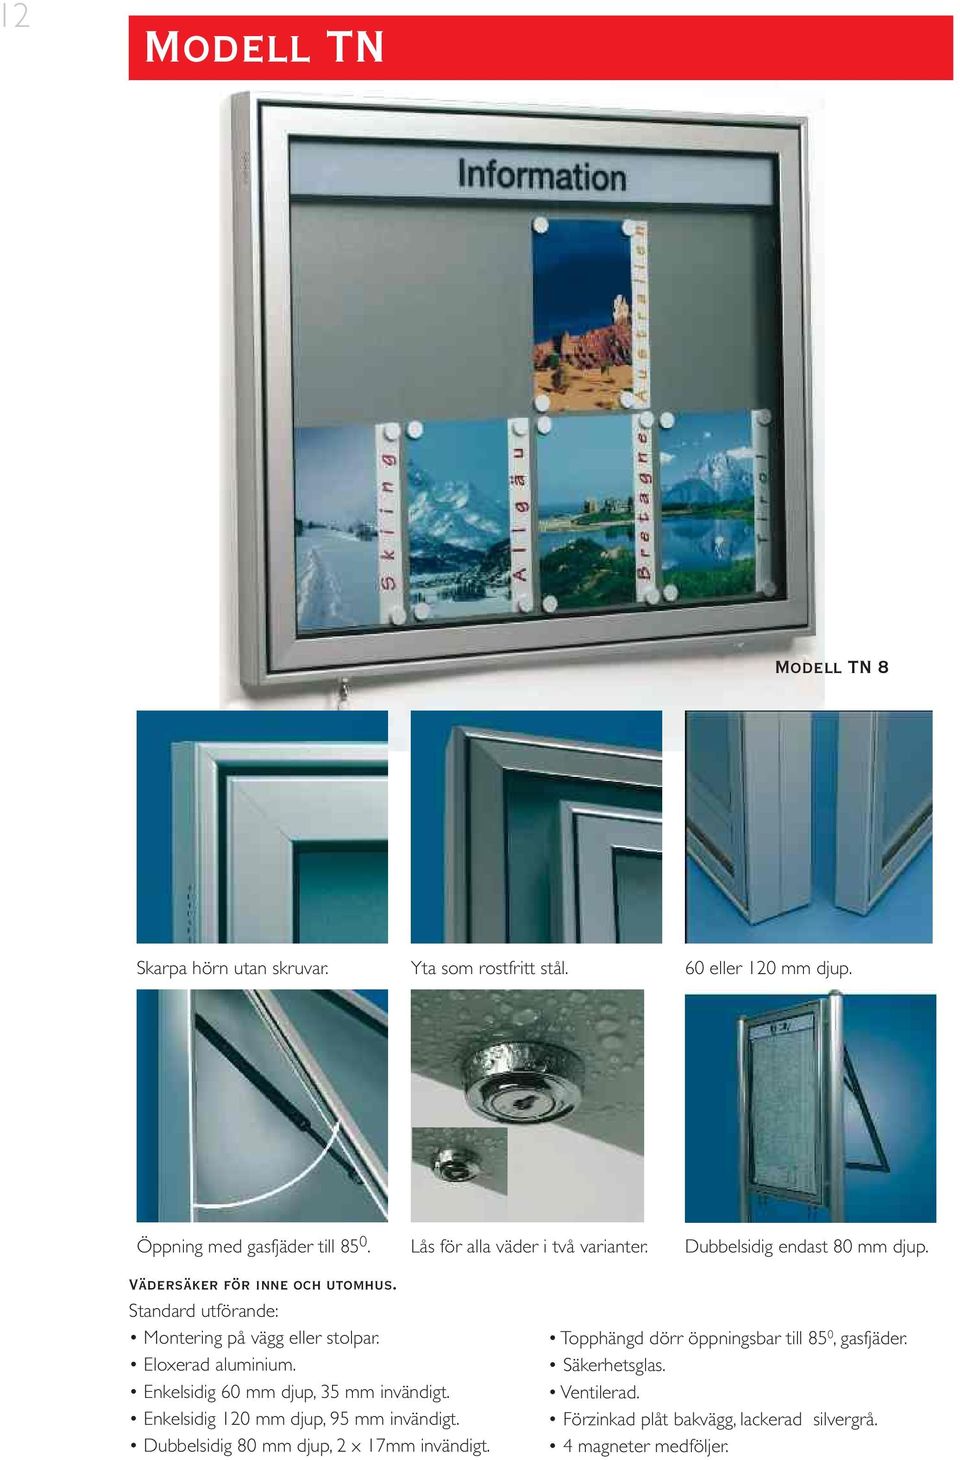 Standard utförande: Montering på vägg eller stolpar. Enkelsidig 60 mm djup, 35 mm invändigt. Enkelsidig 120 mm djup, 95 mm invändigt.